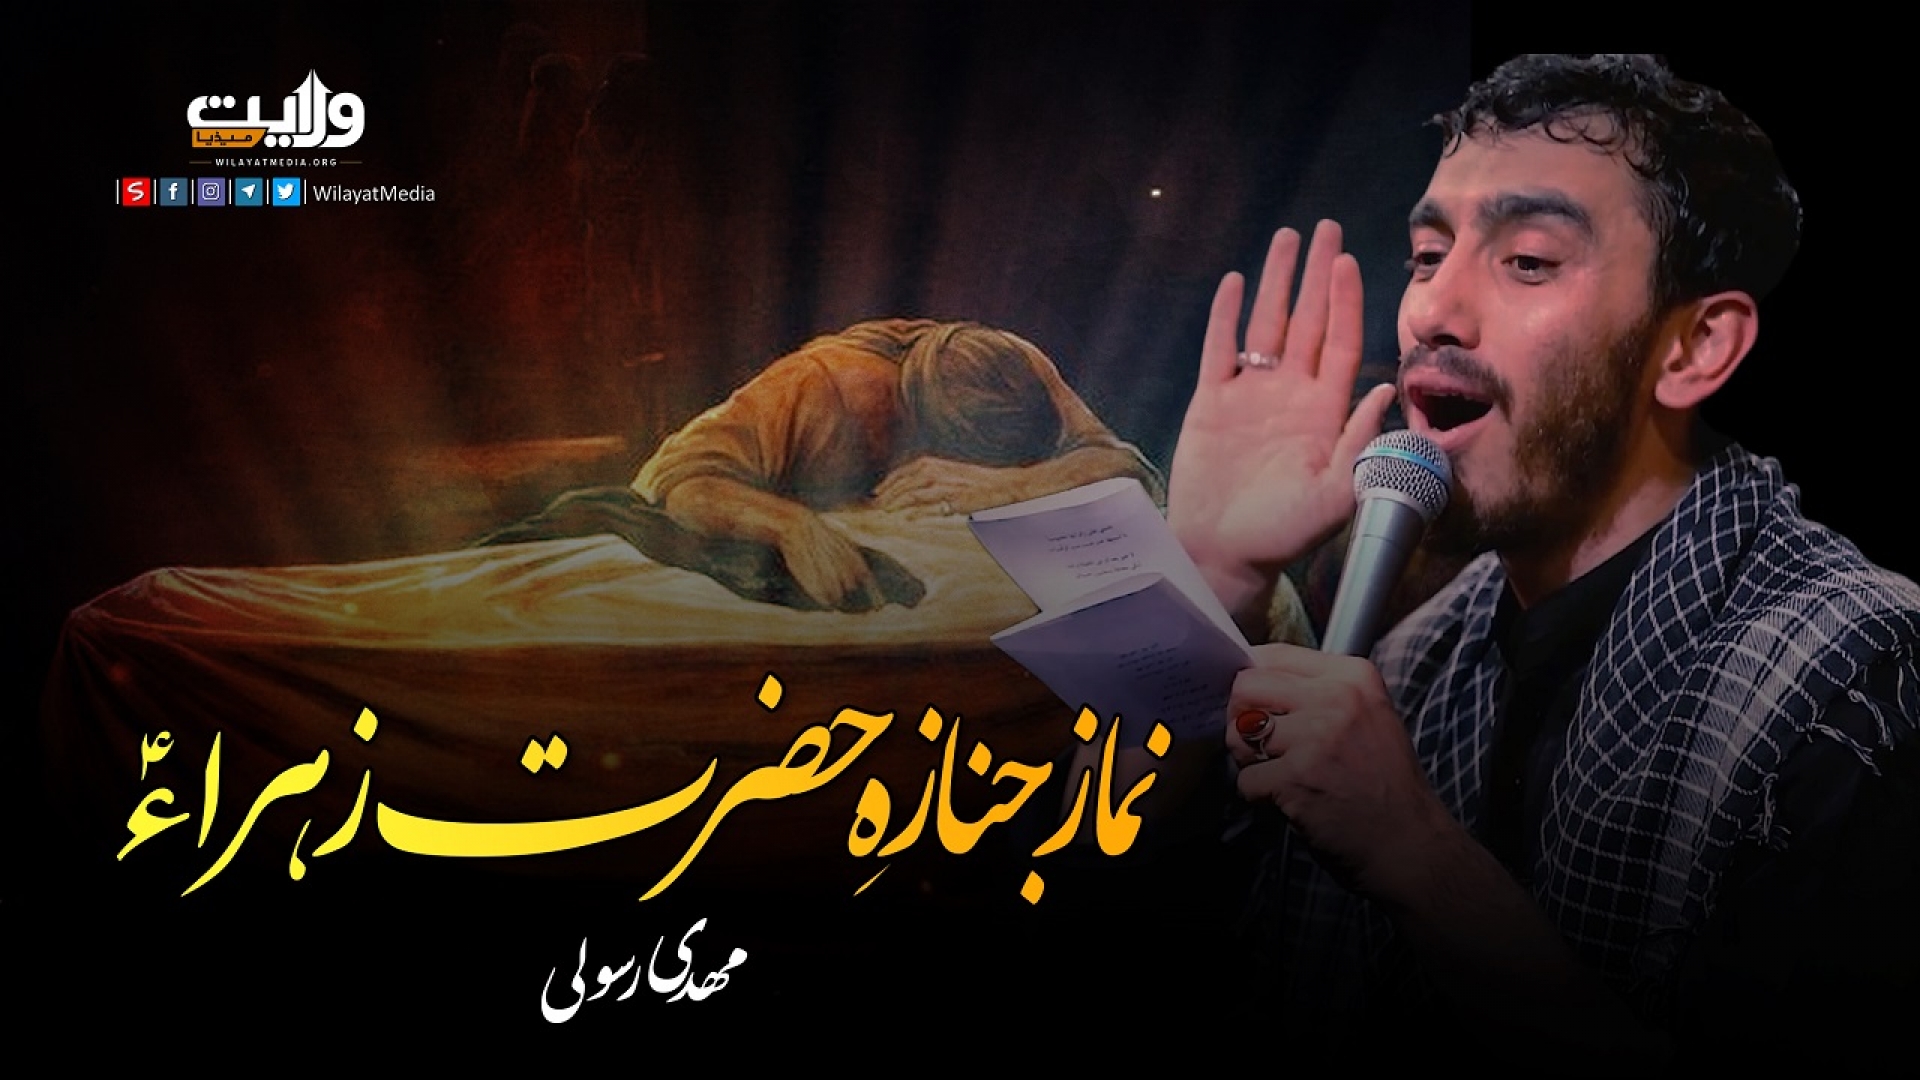 نماز جنازہِ حضرت زہراءؑ | مھدی رسولی | Farsi Sub Urdu